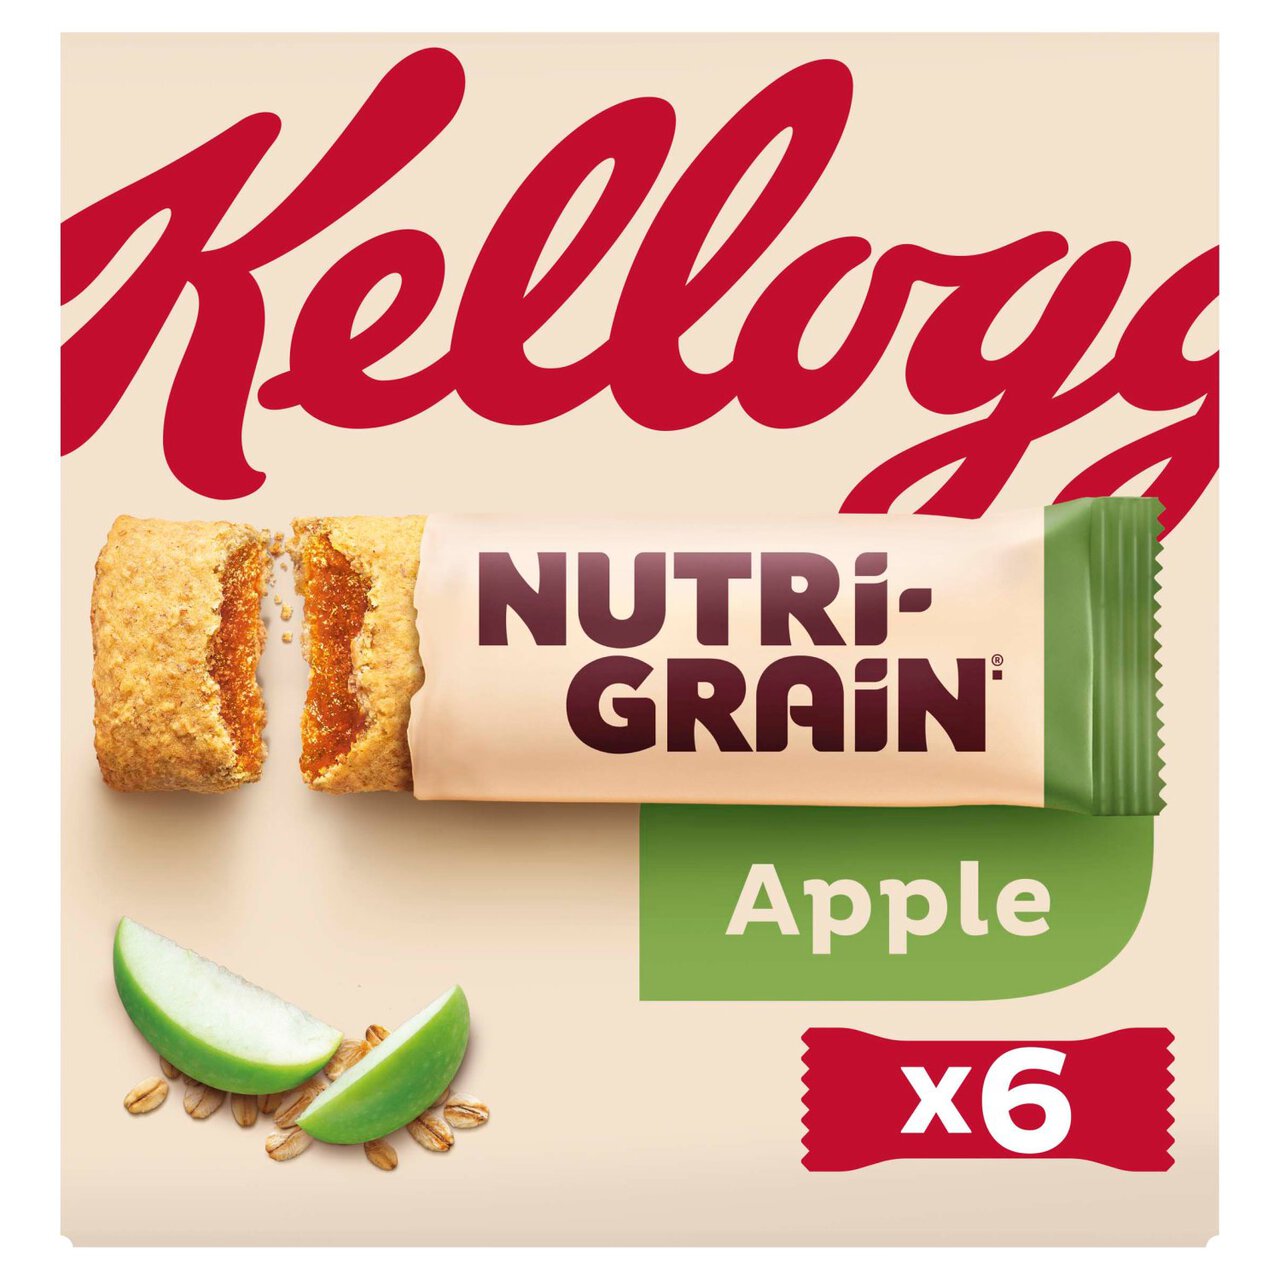 Kellogg's Nutrigrain Apple 6 per pack